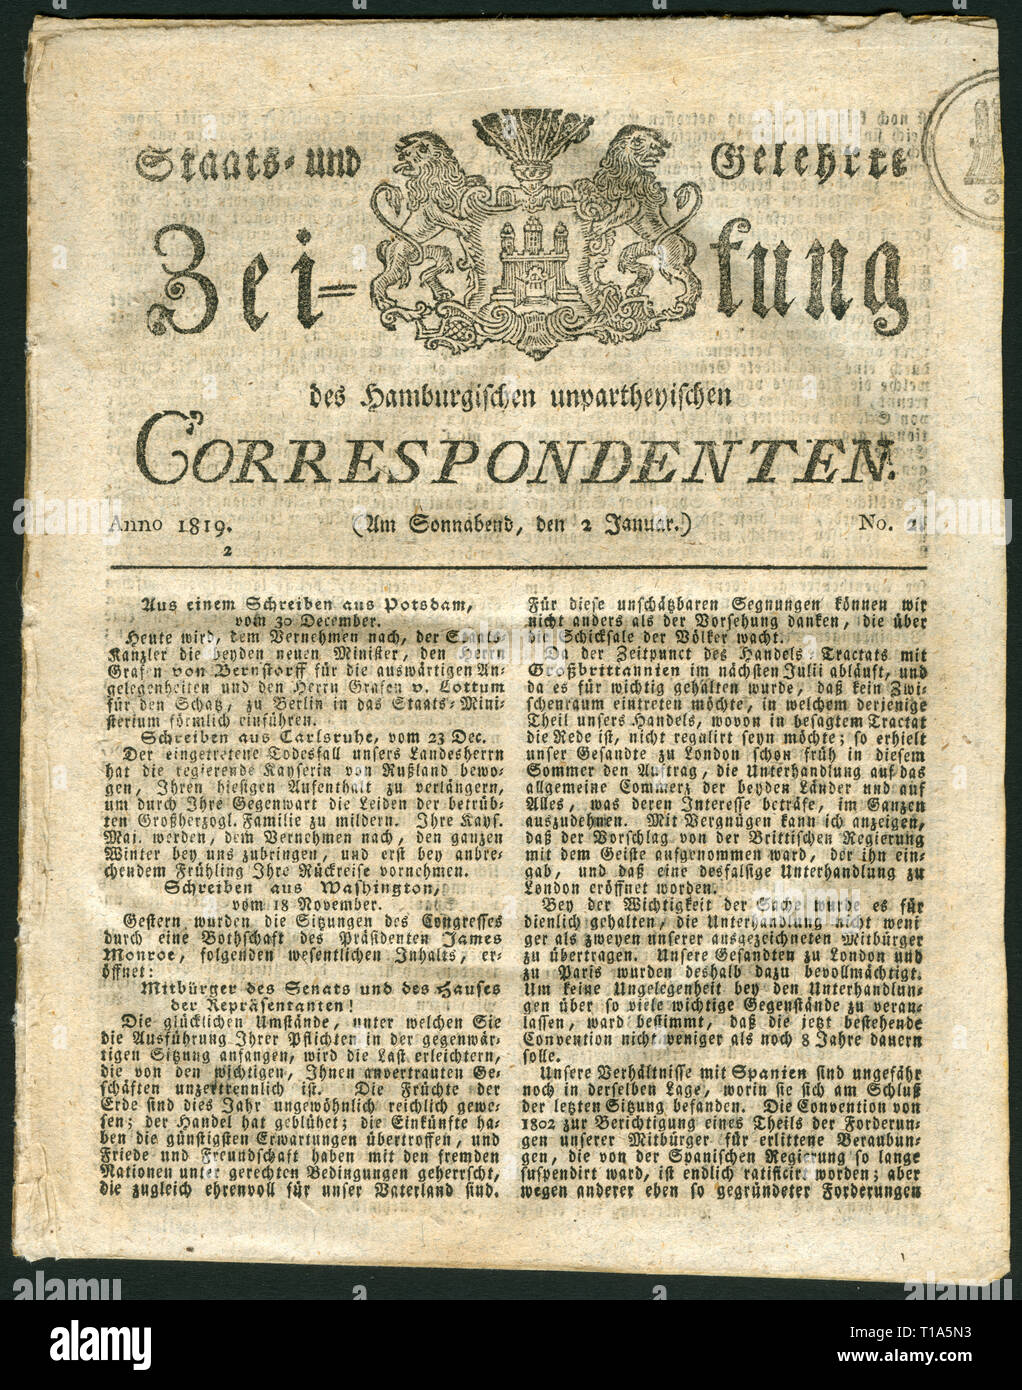 Germania, Amburgo, storico giornale chiamato: 'Staats-und Gelehrte Zeitung des Hamburgischen Correspondenten unpartheyischen', n. 2, 2.1.1819, Additional-Rights-Clearance-Info-Not-Available Foto Stock